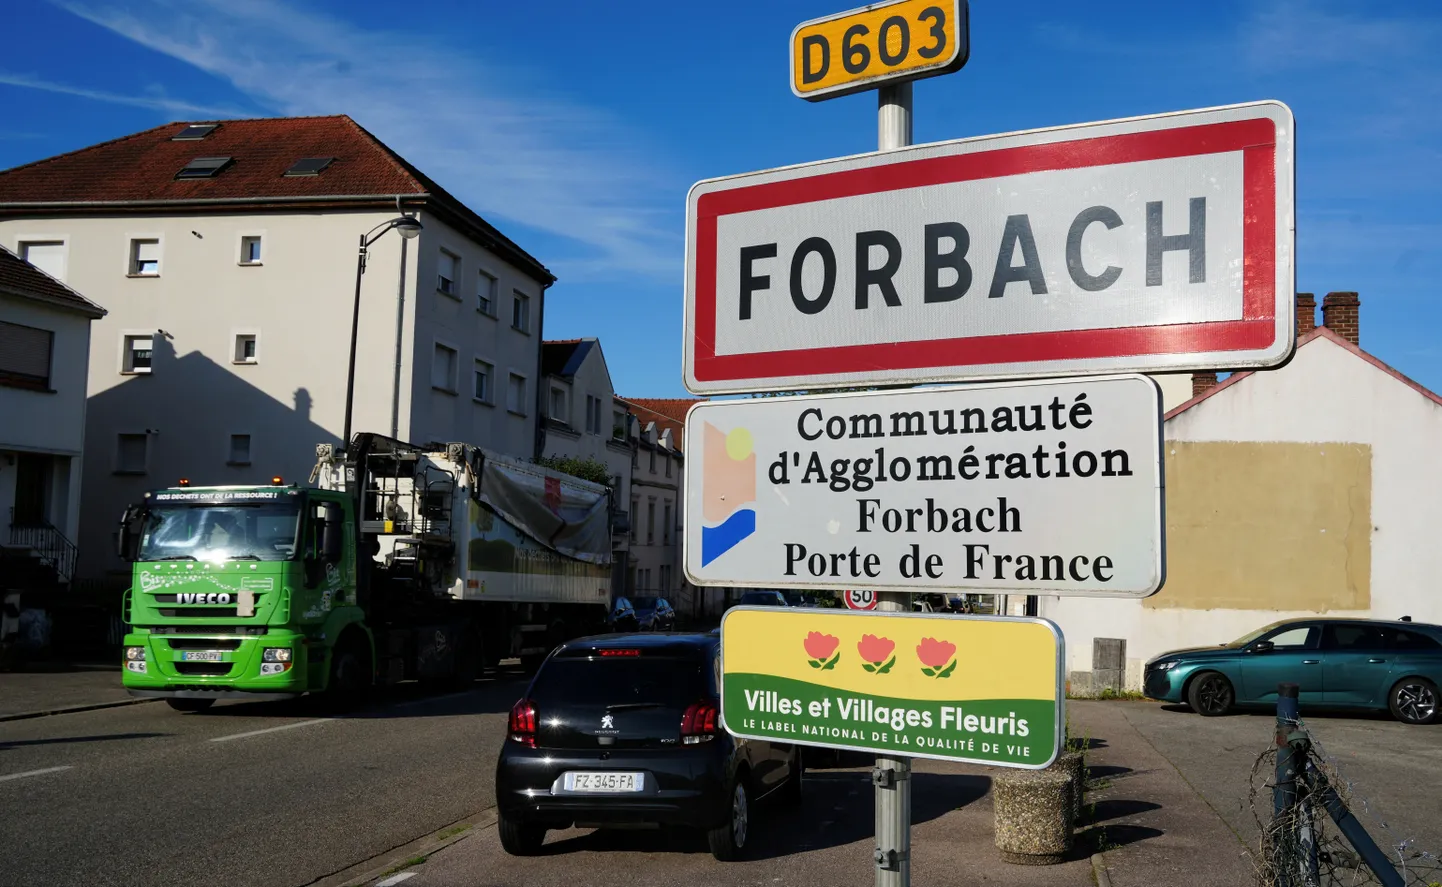 Ida-Prantsusmaal asuv Forbach, kus sakslannast naine süüdistas oma meest vangistamises. Politsei ja prokurör lükkasid selle ümber